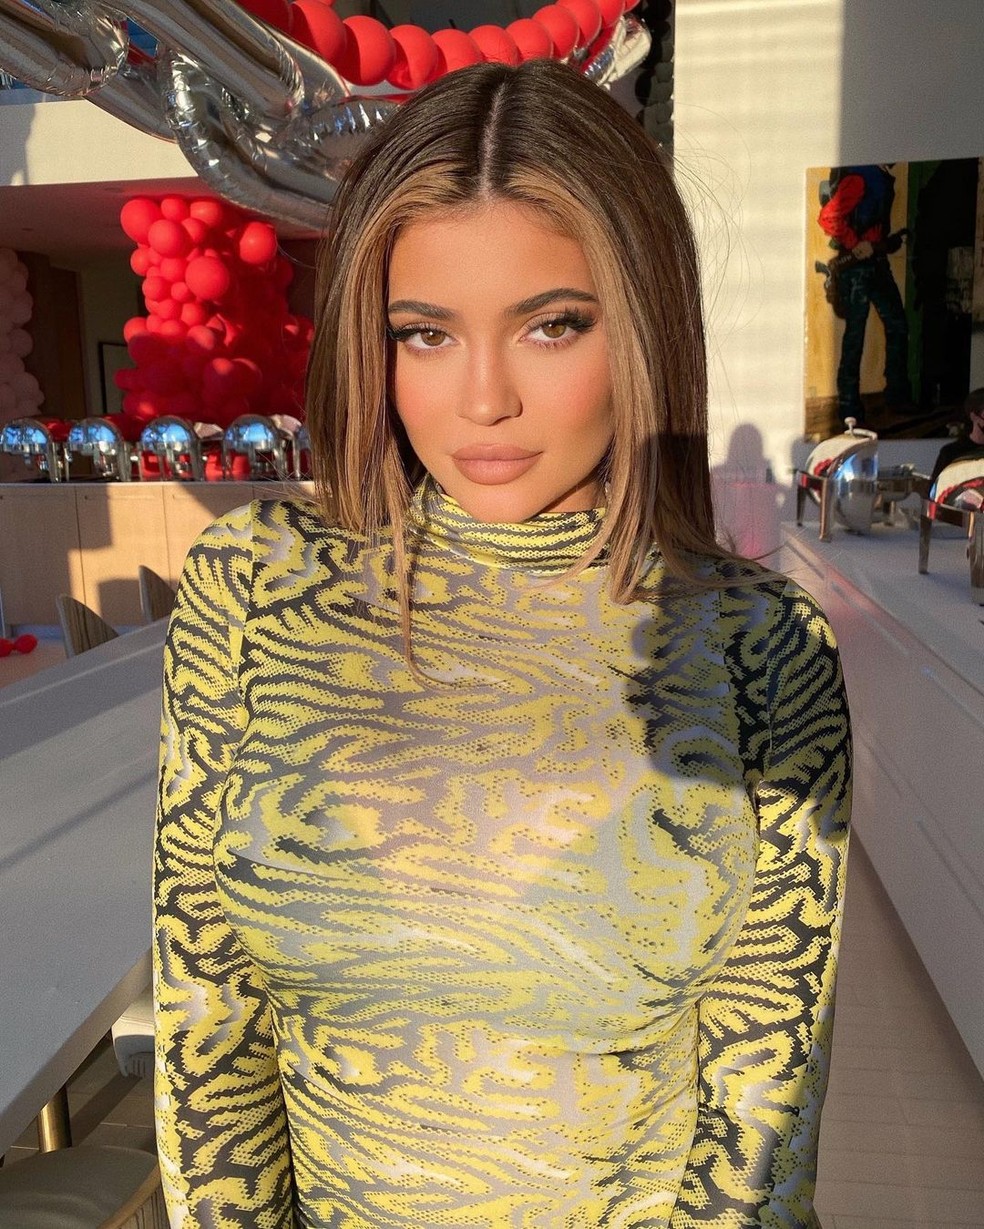 Kylie Jenner também já adotou o visual com mechas ao lado do rosto — Foto: Reprodução/Instagram